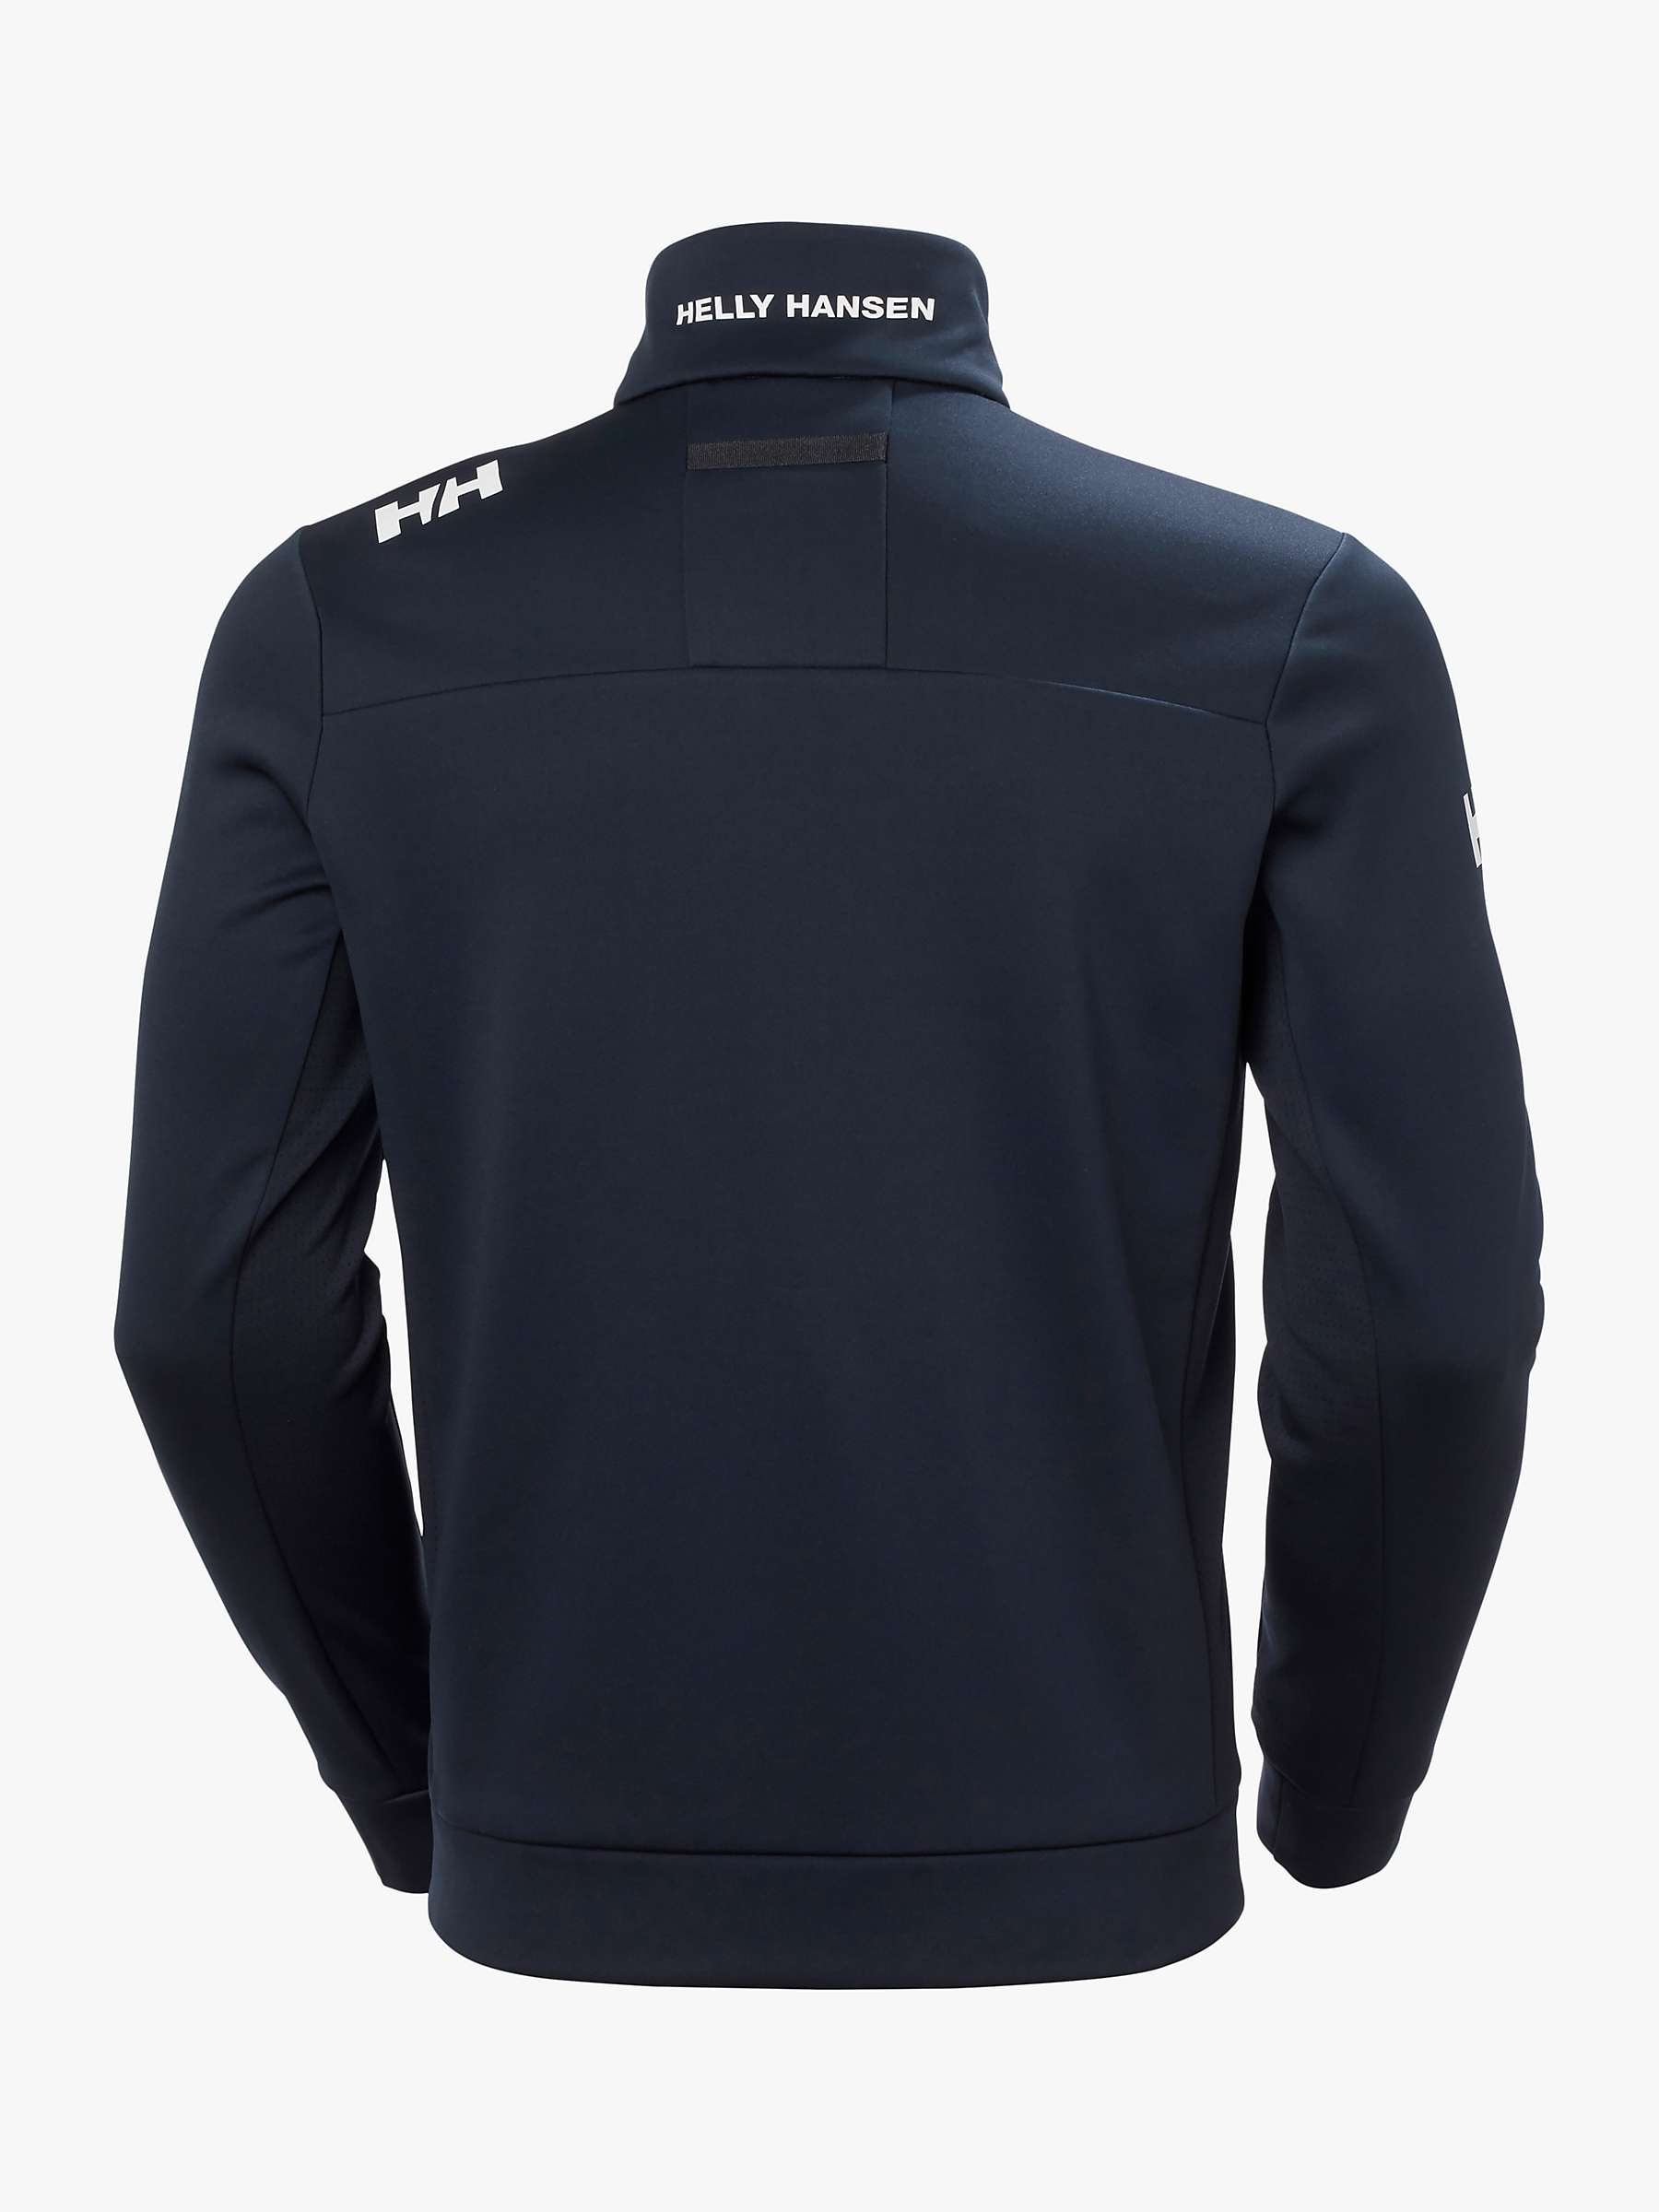 Buy Helly Hansen Crew Full-Zip Men's Fleece Jacket, Navy Online at johnlewis.com